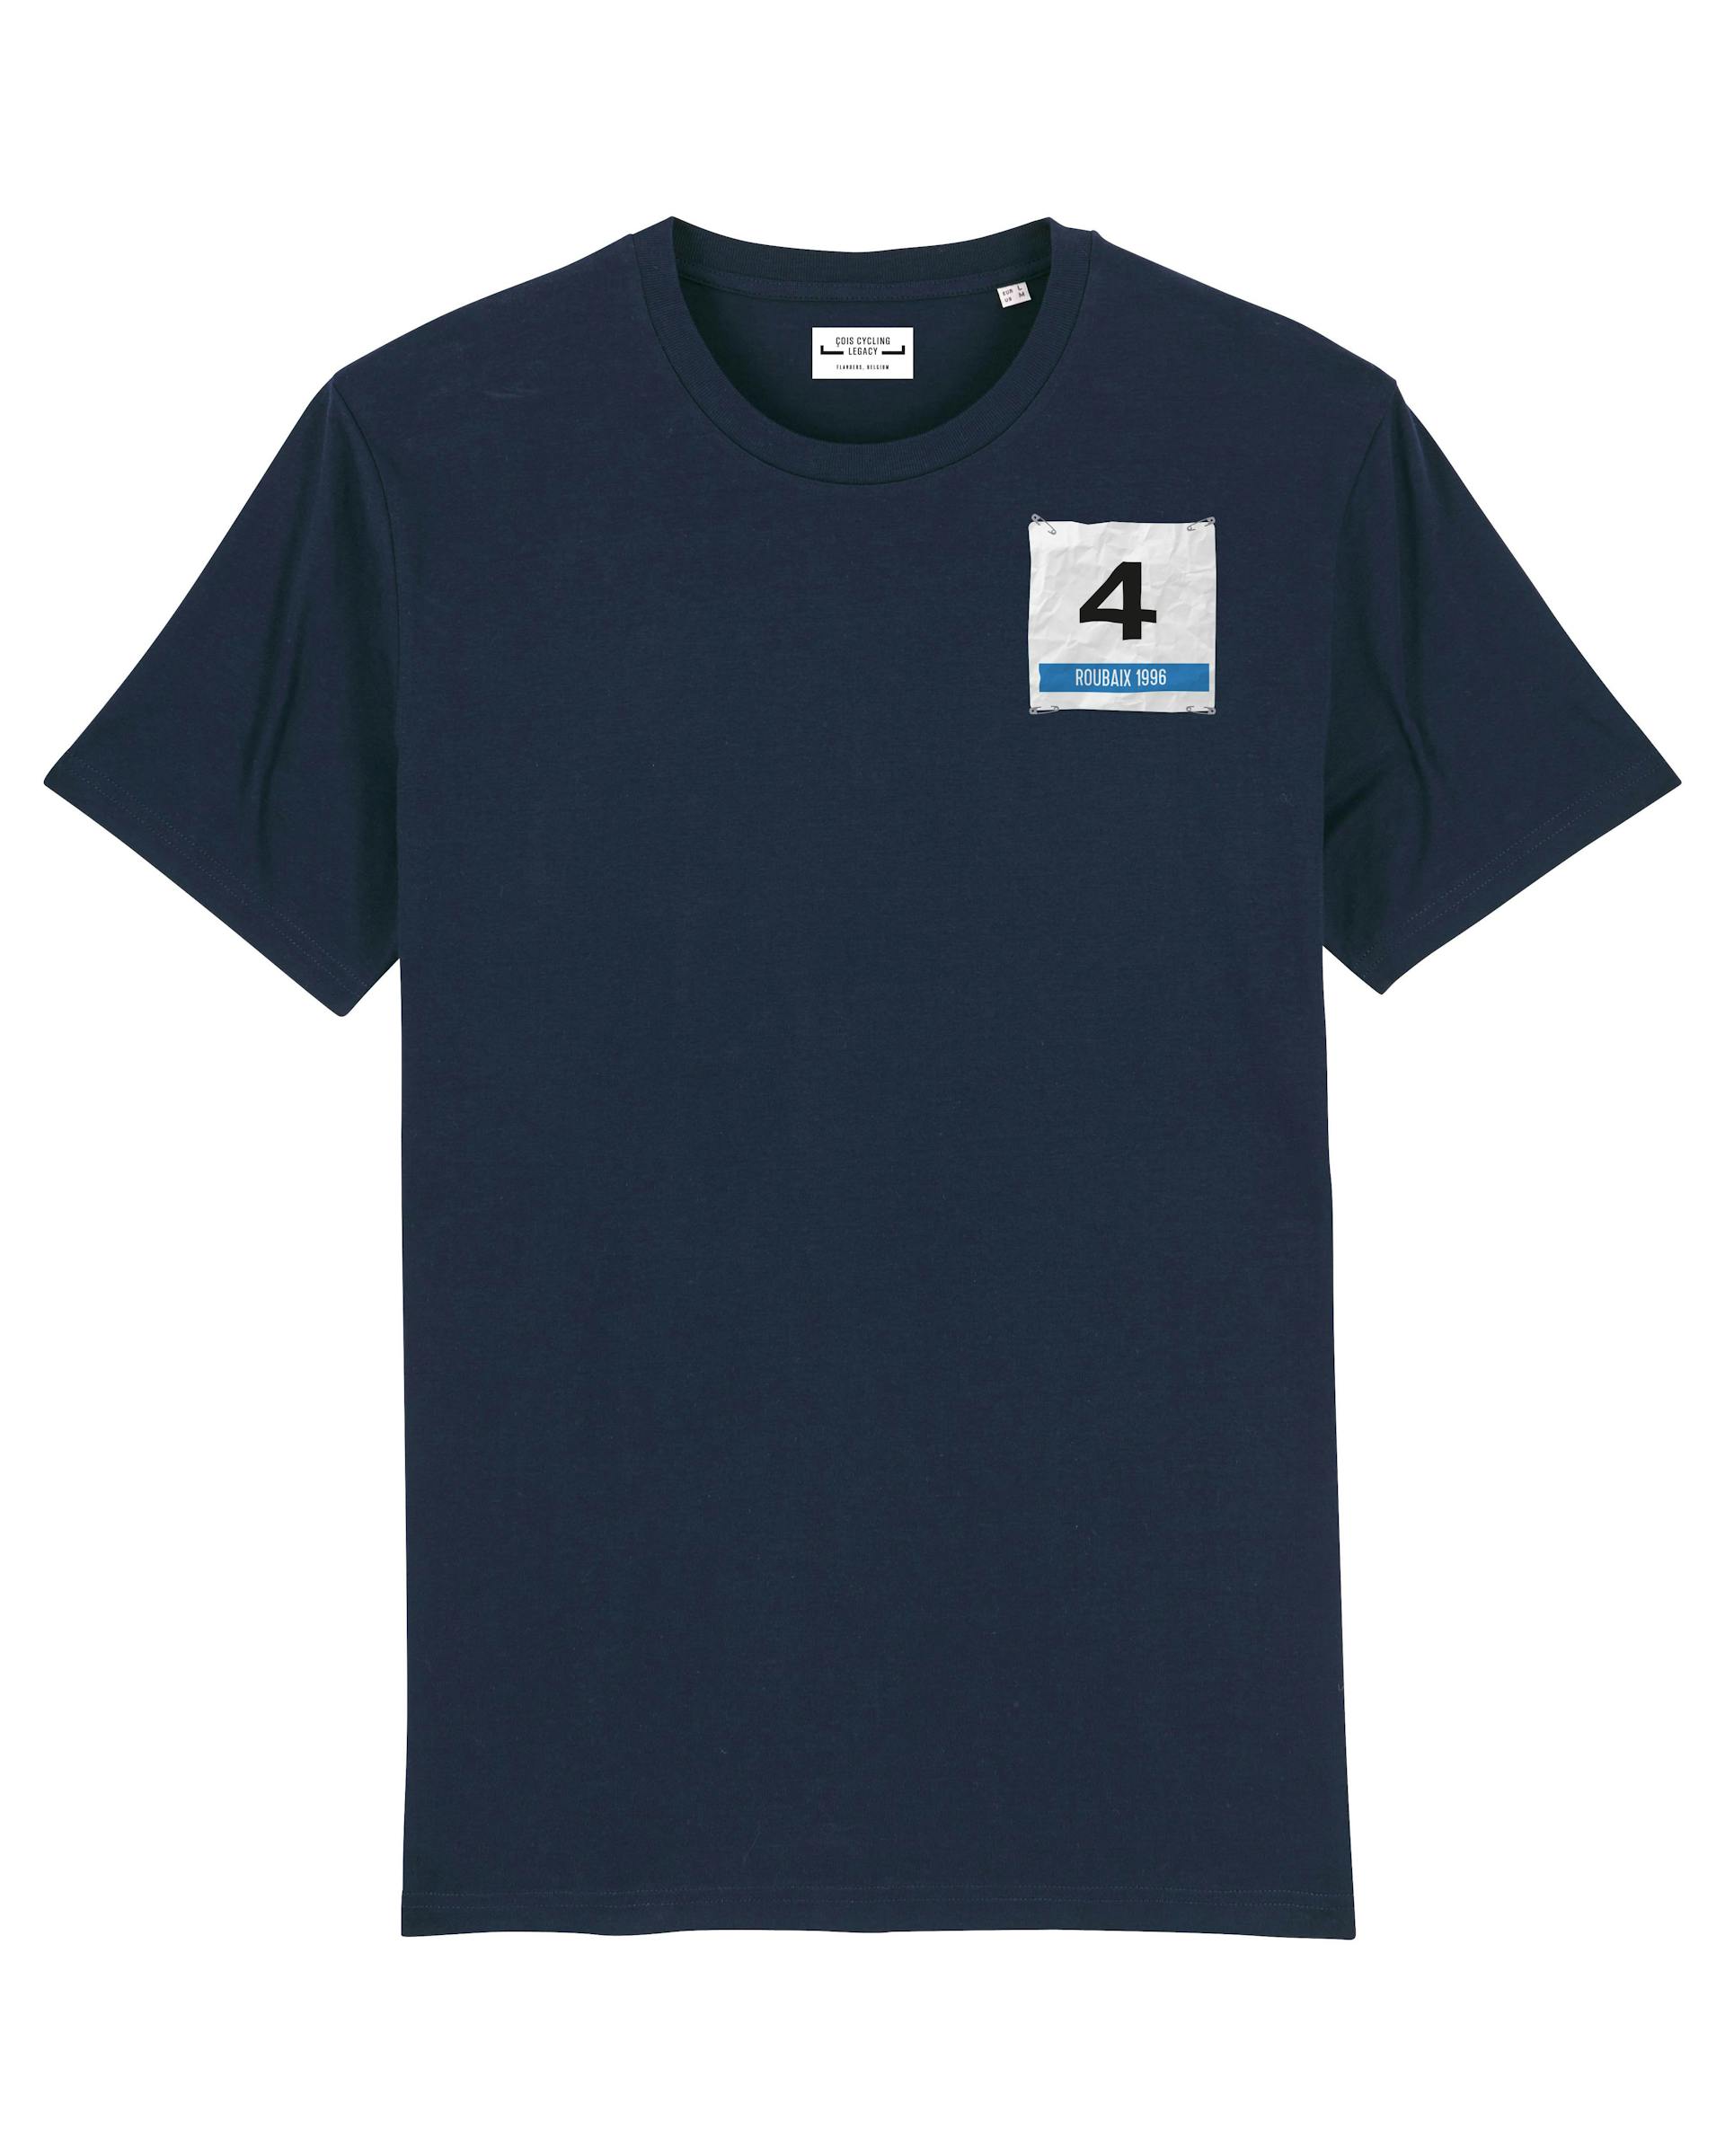 Roubaix 1996 cycling T-shirt